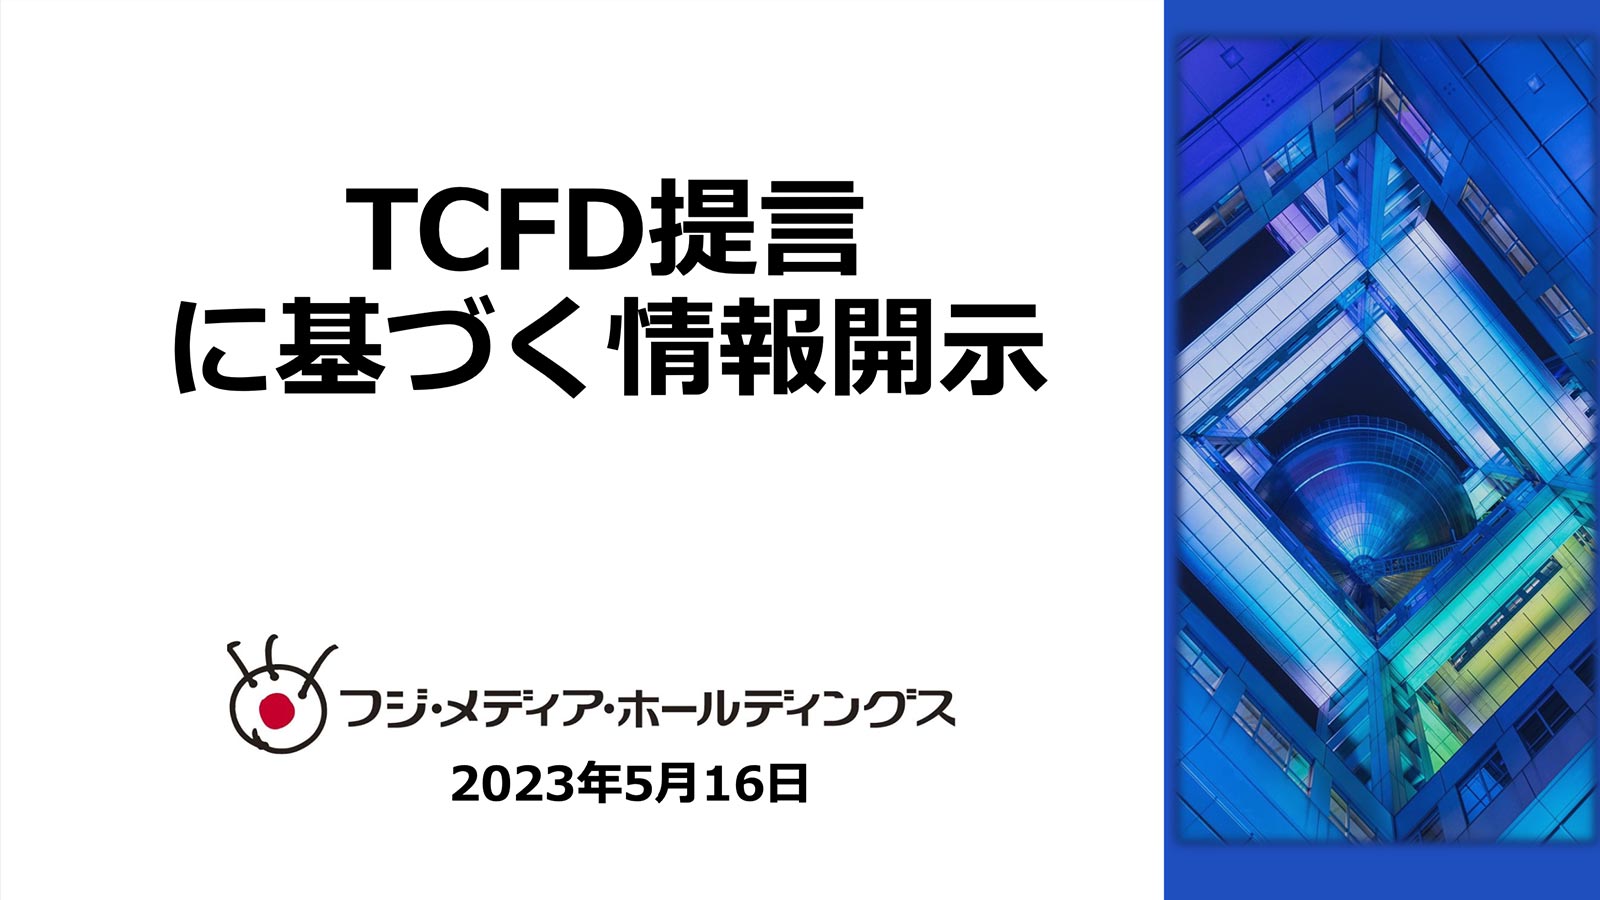 TCFD提言に基づく情報開示 2023年度版